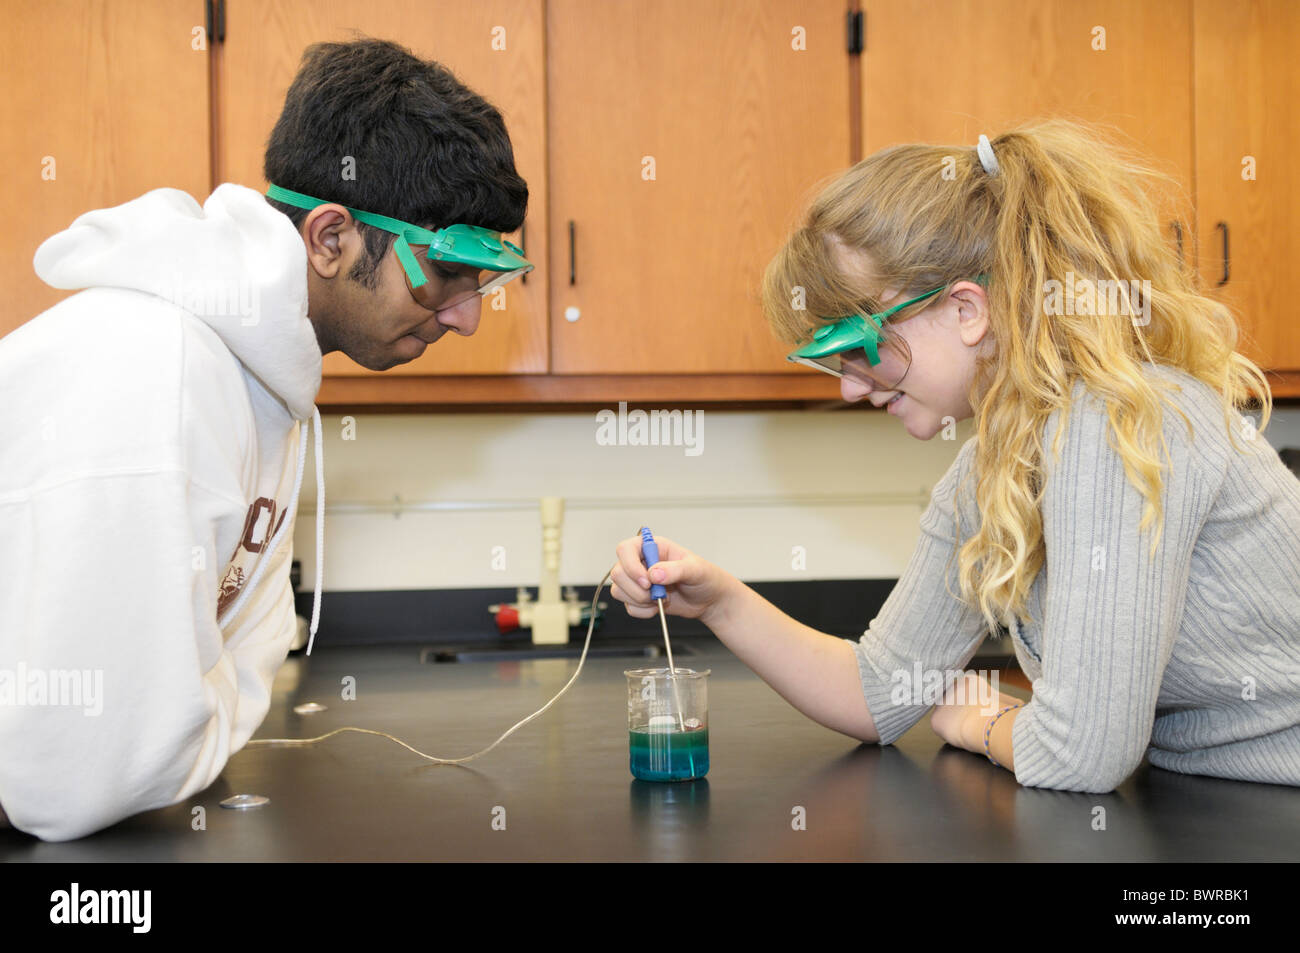 Les élèves portant des lunettes de sécurité tout en faisant une expérience scientifique mesurer la température d'une réaction chimique Banque D'Images